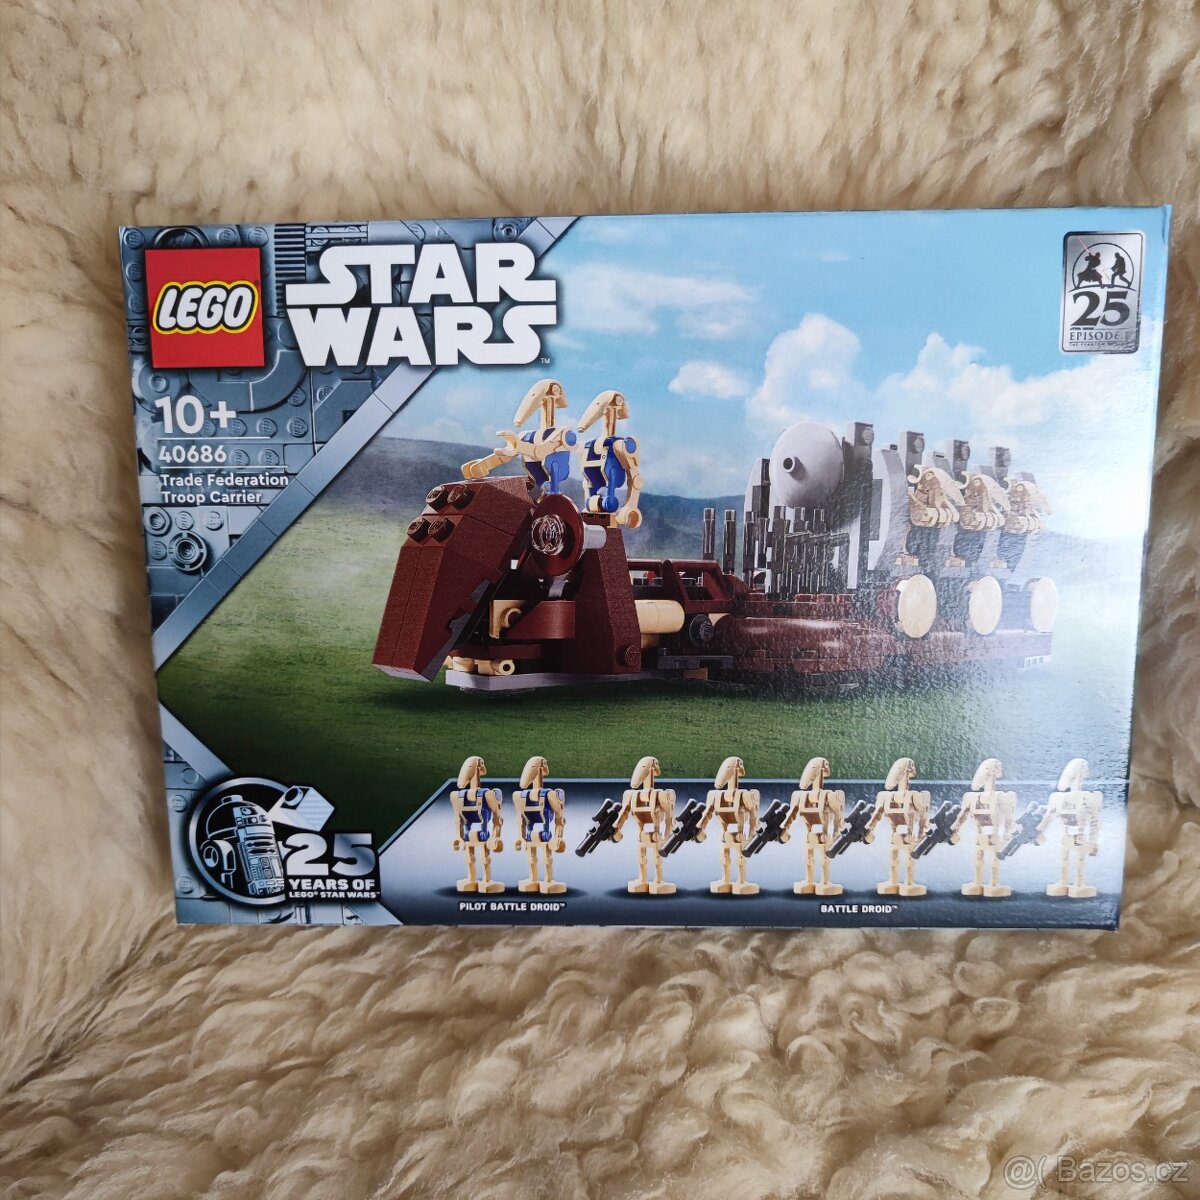 Lego Starwars 40686